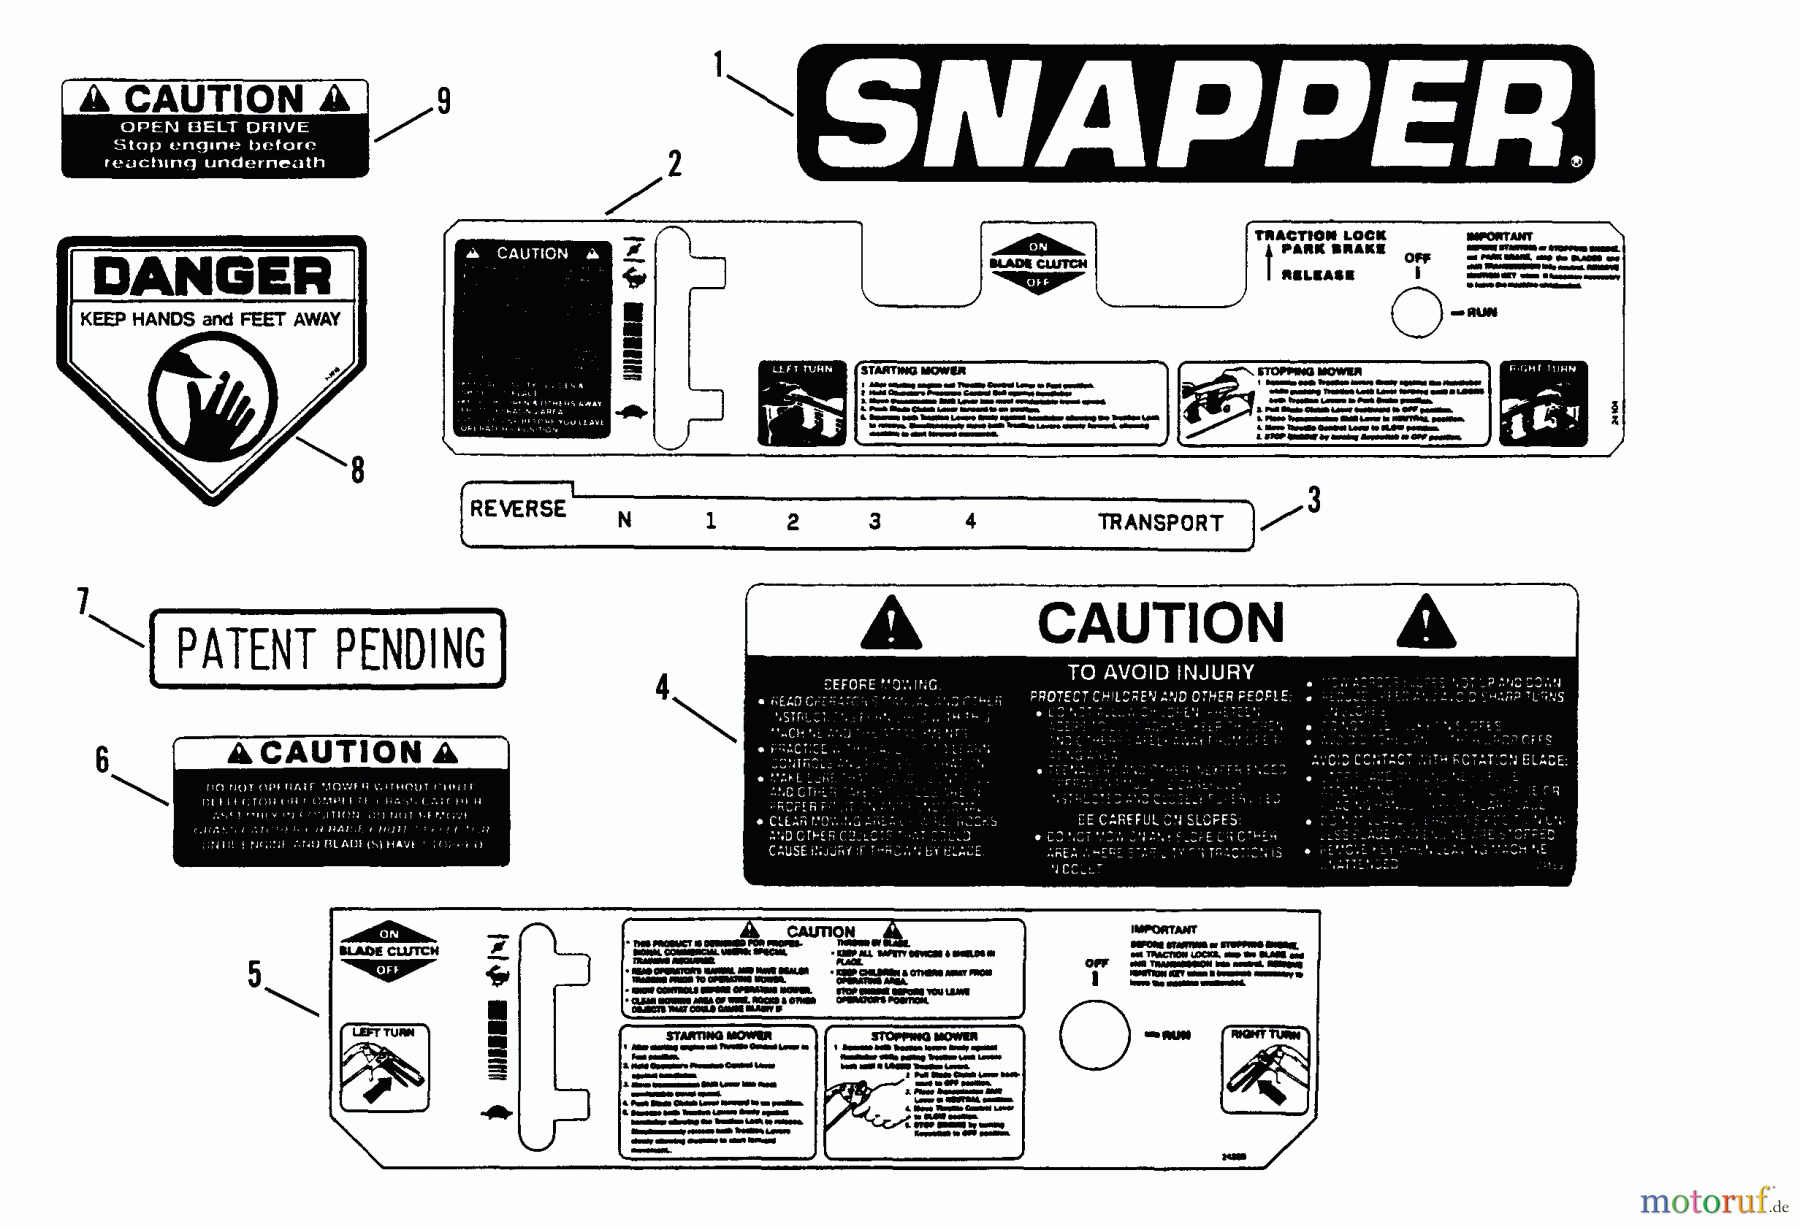  Snapper Mähdecks PMA7482 - Snapper 48